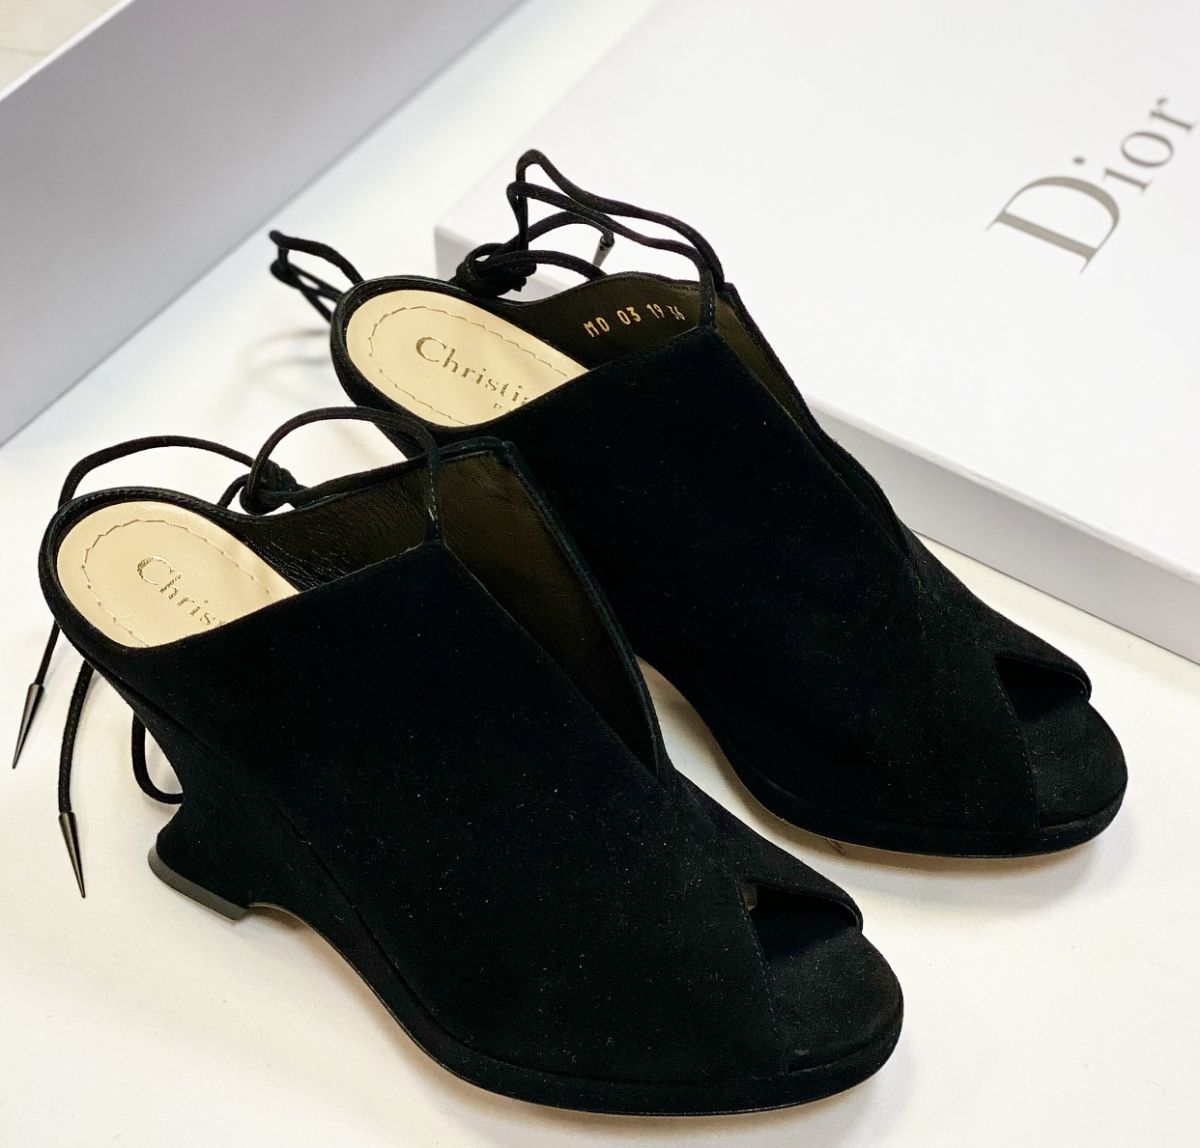 Сабо Christian Dior размер 36 цена 30 770 руб / новые / 